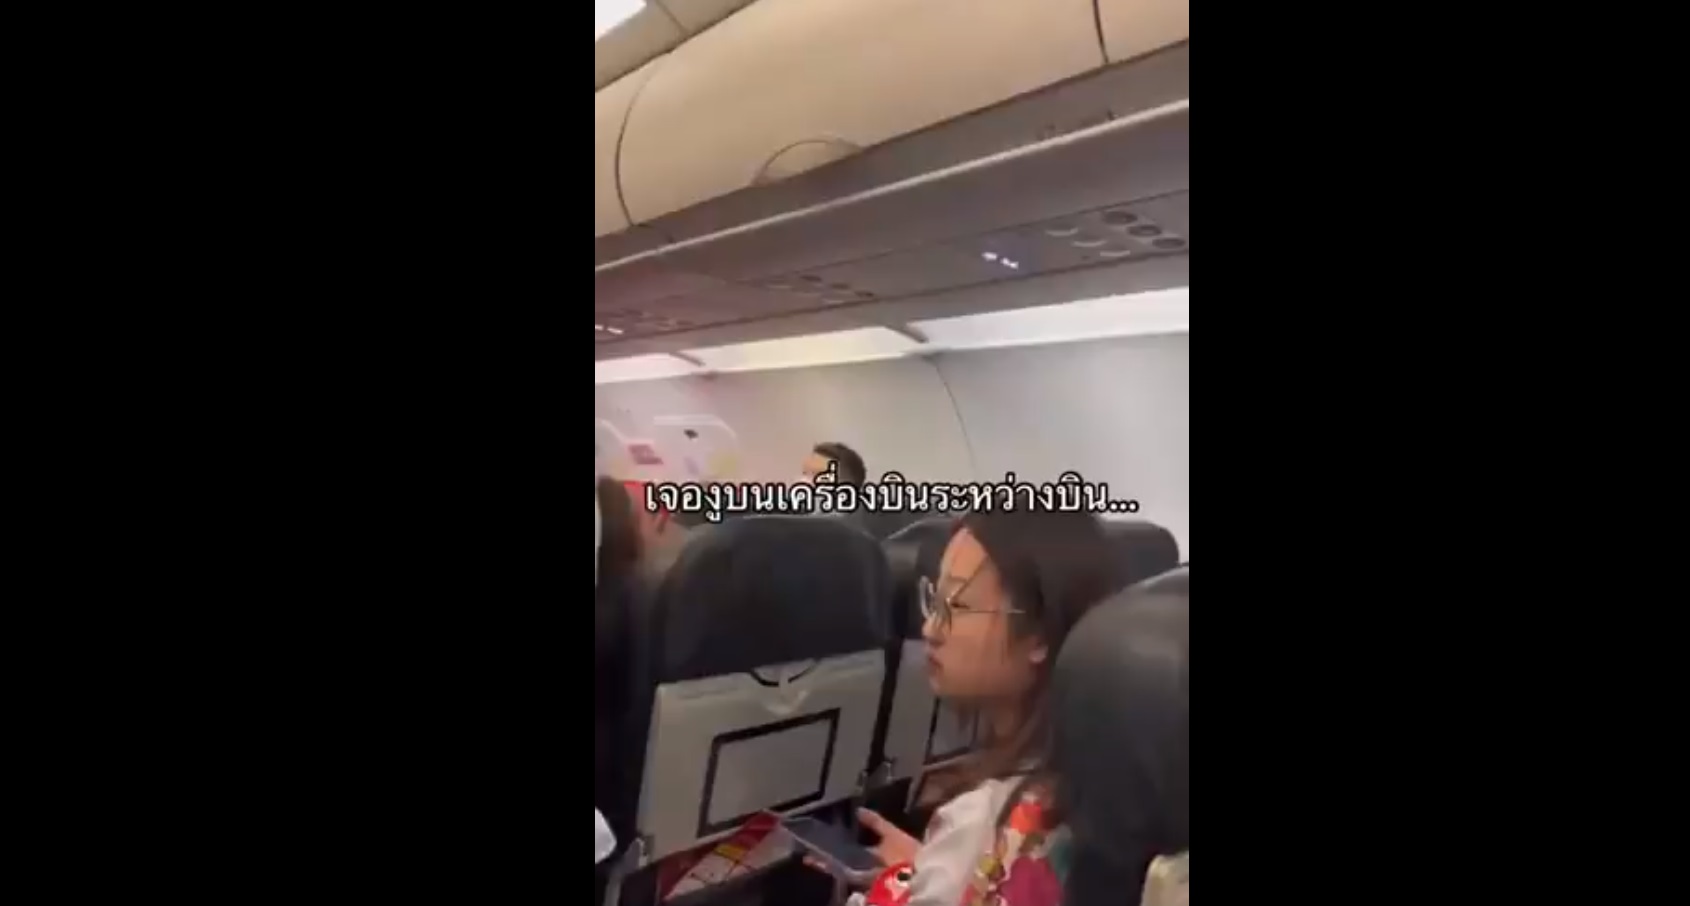 Thailandia: un serpente viene scoperto su un aereo passeggeri. Il video